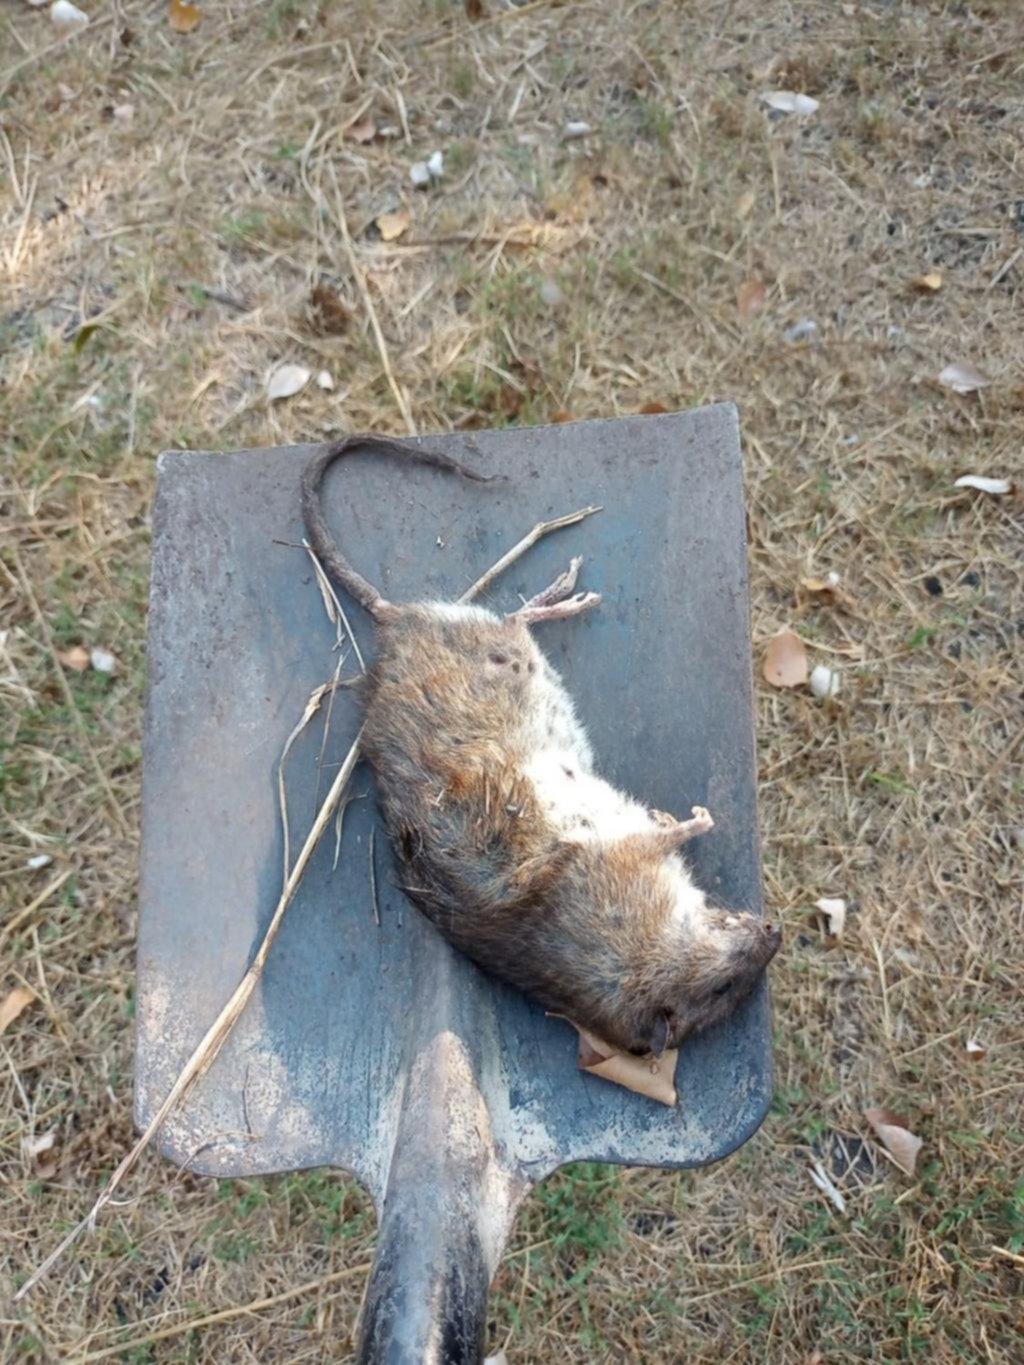 Peligro por roedores en un barrio de la localidad de Olmos